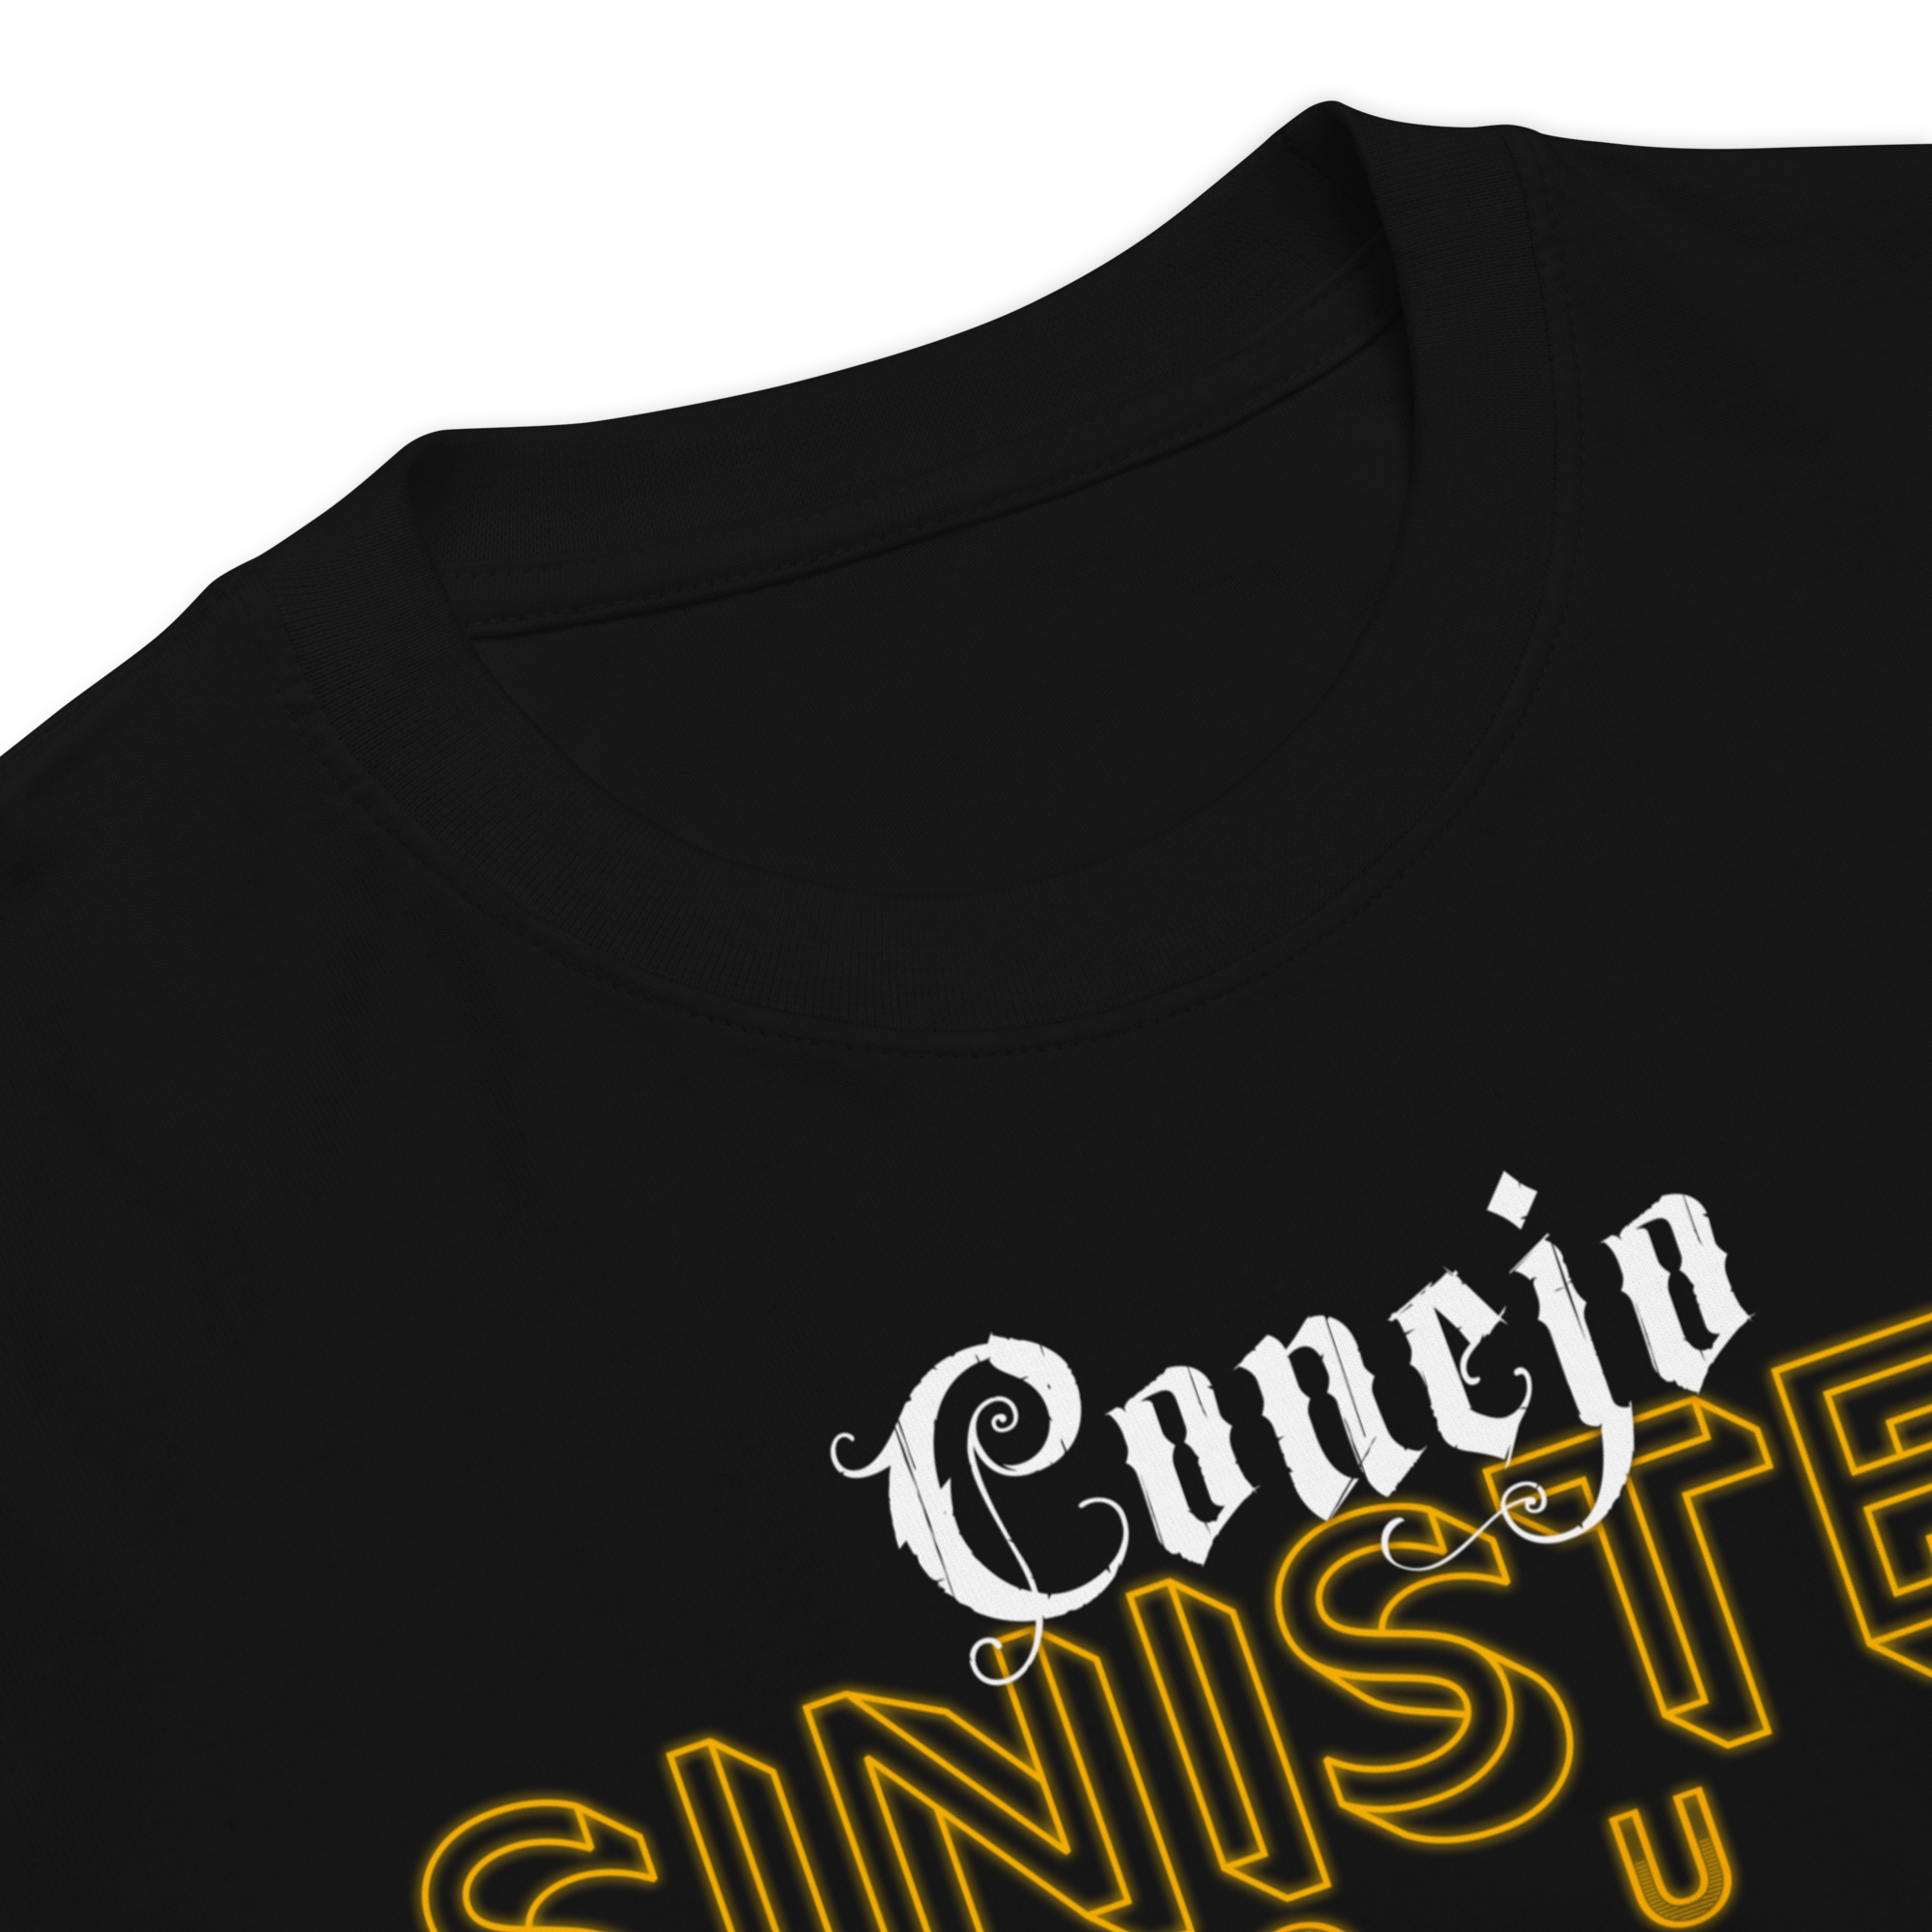 Conejo's Sinister Tour Tee